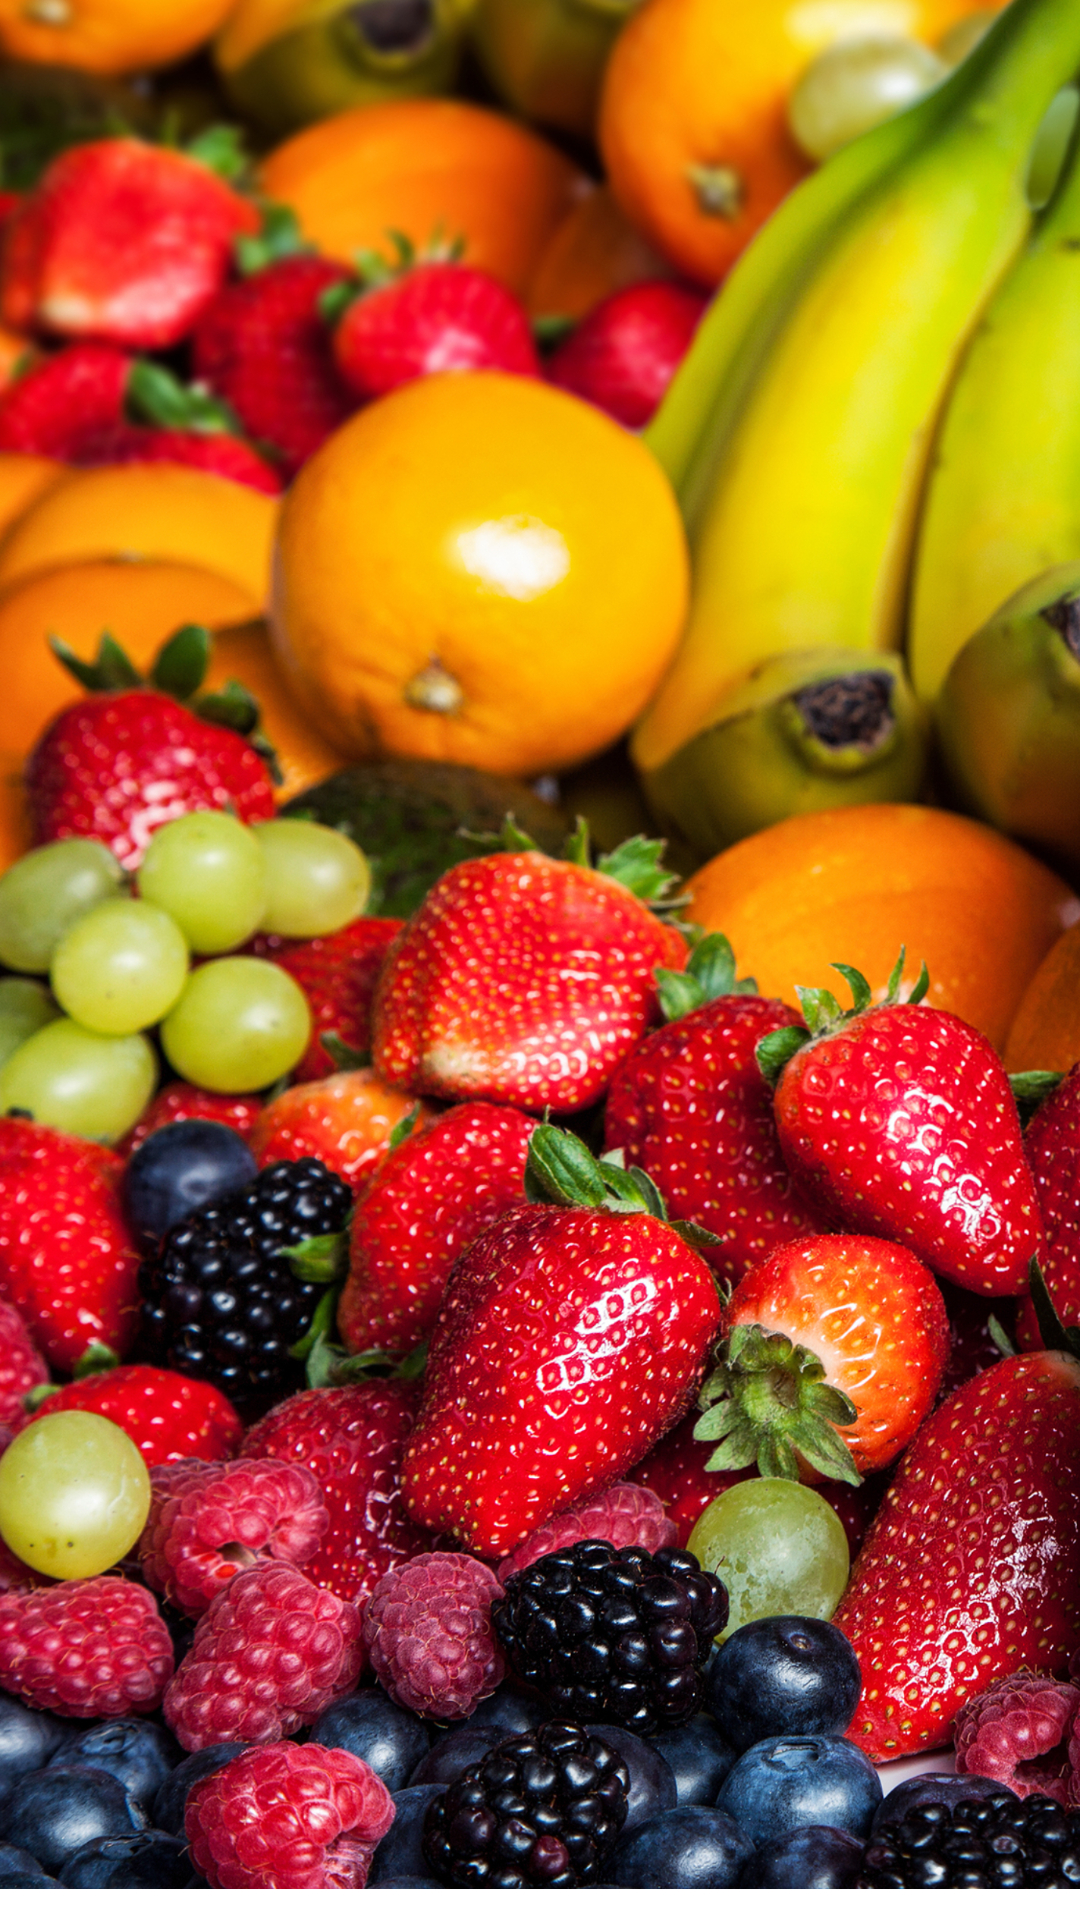 मानसून में स्वस्थ रहने के लिए खाएं ये फल